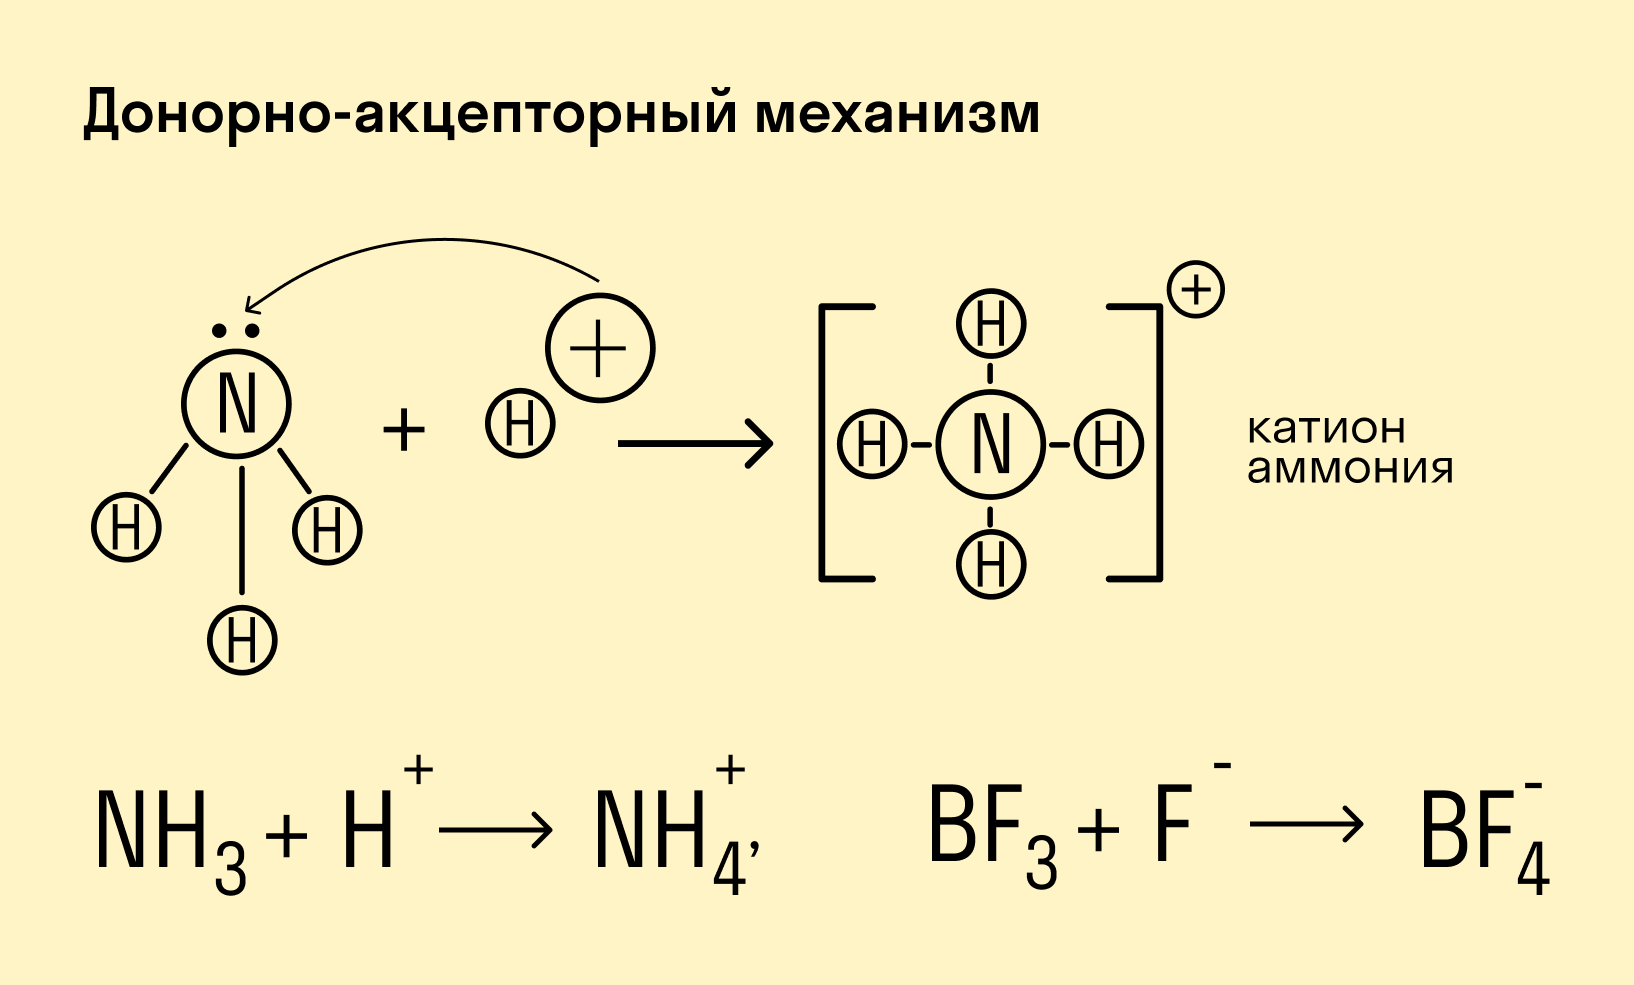 Донорно-акцепторный механизм химической связи